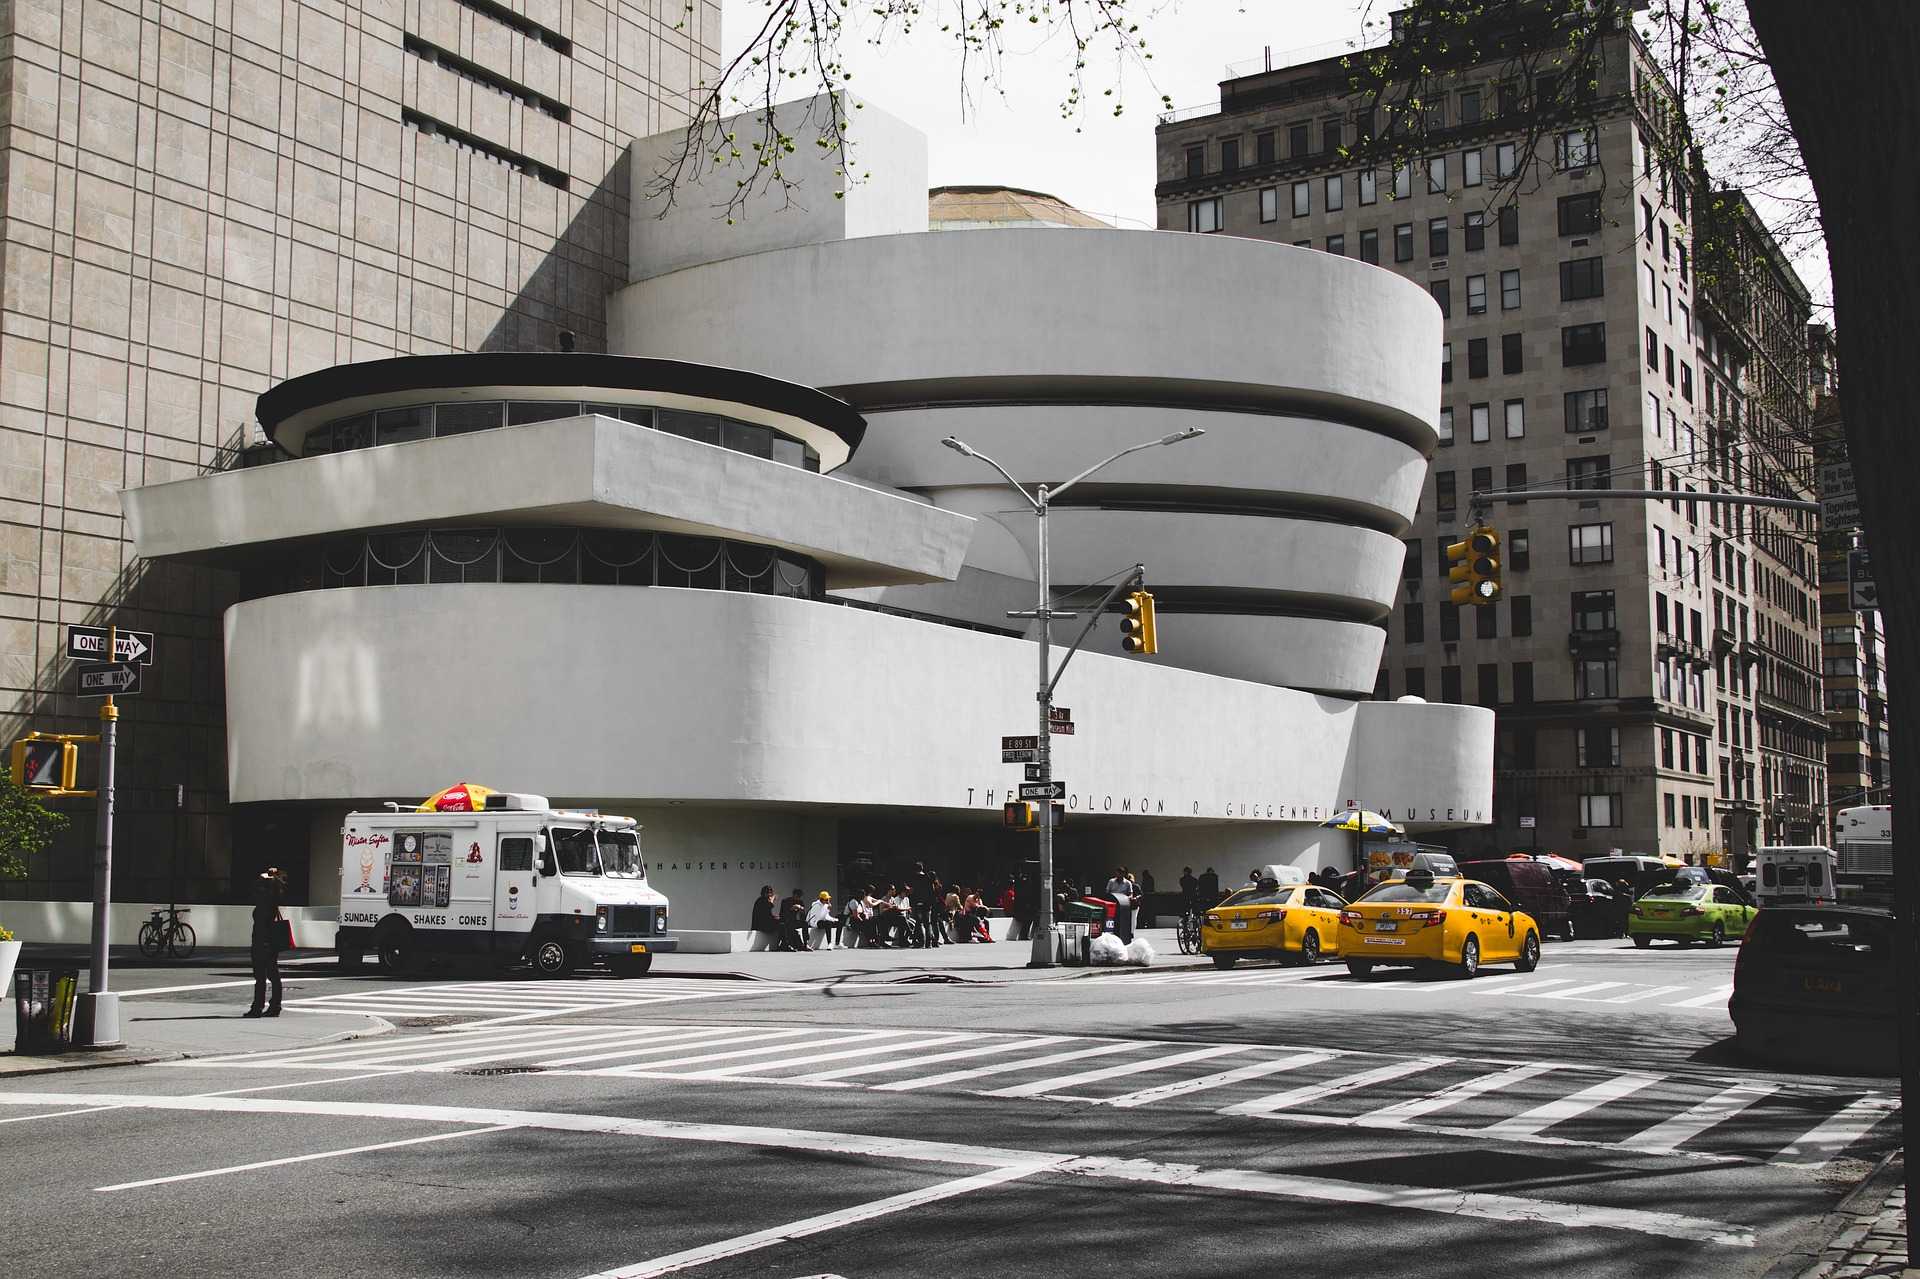 מוזיאון גוגנהיים ניו יורק 2022 - כרטיסים, מחירים וכל הפרטים